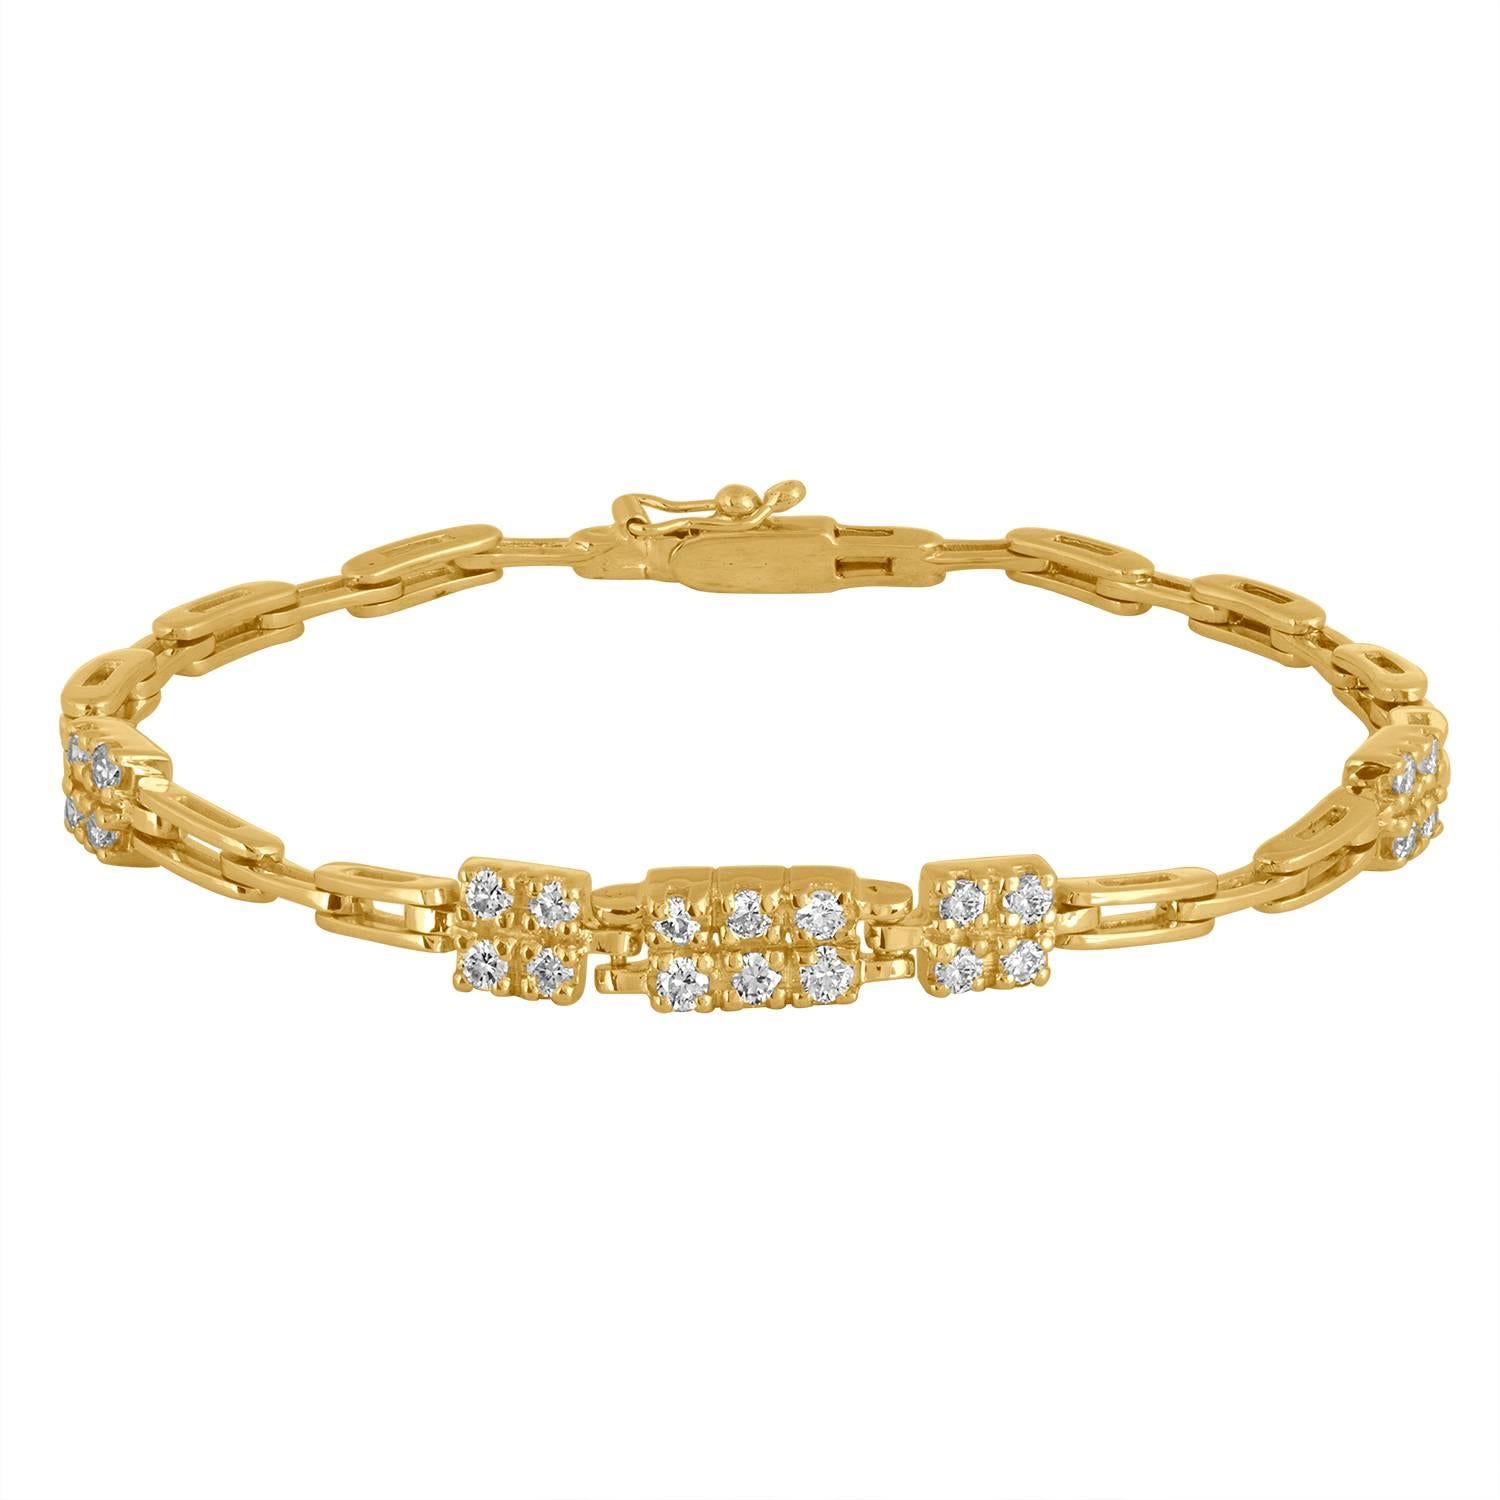 1.10 Carats Diamonds Gold Link Bracelet